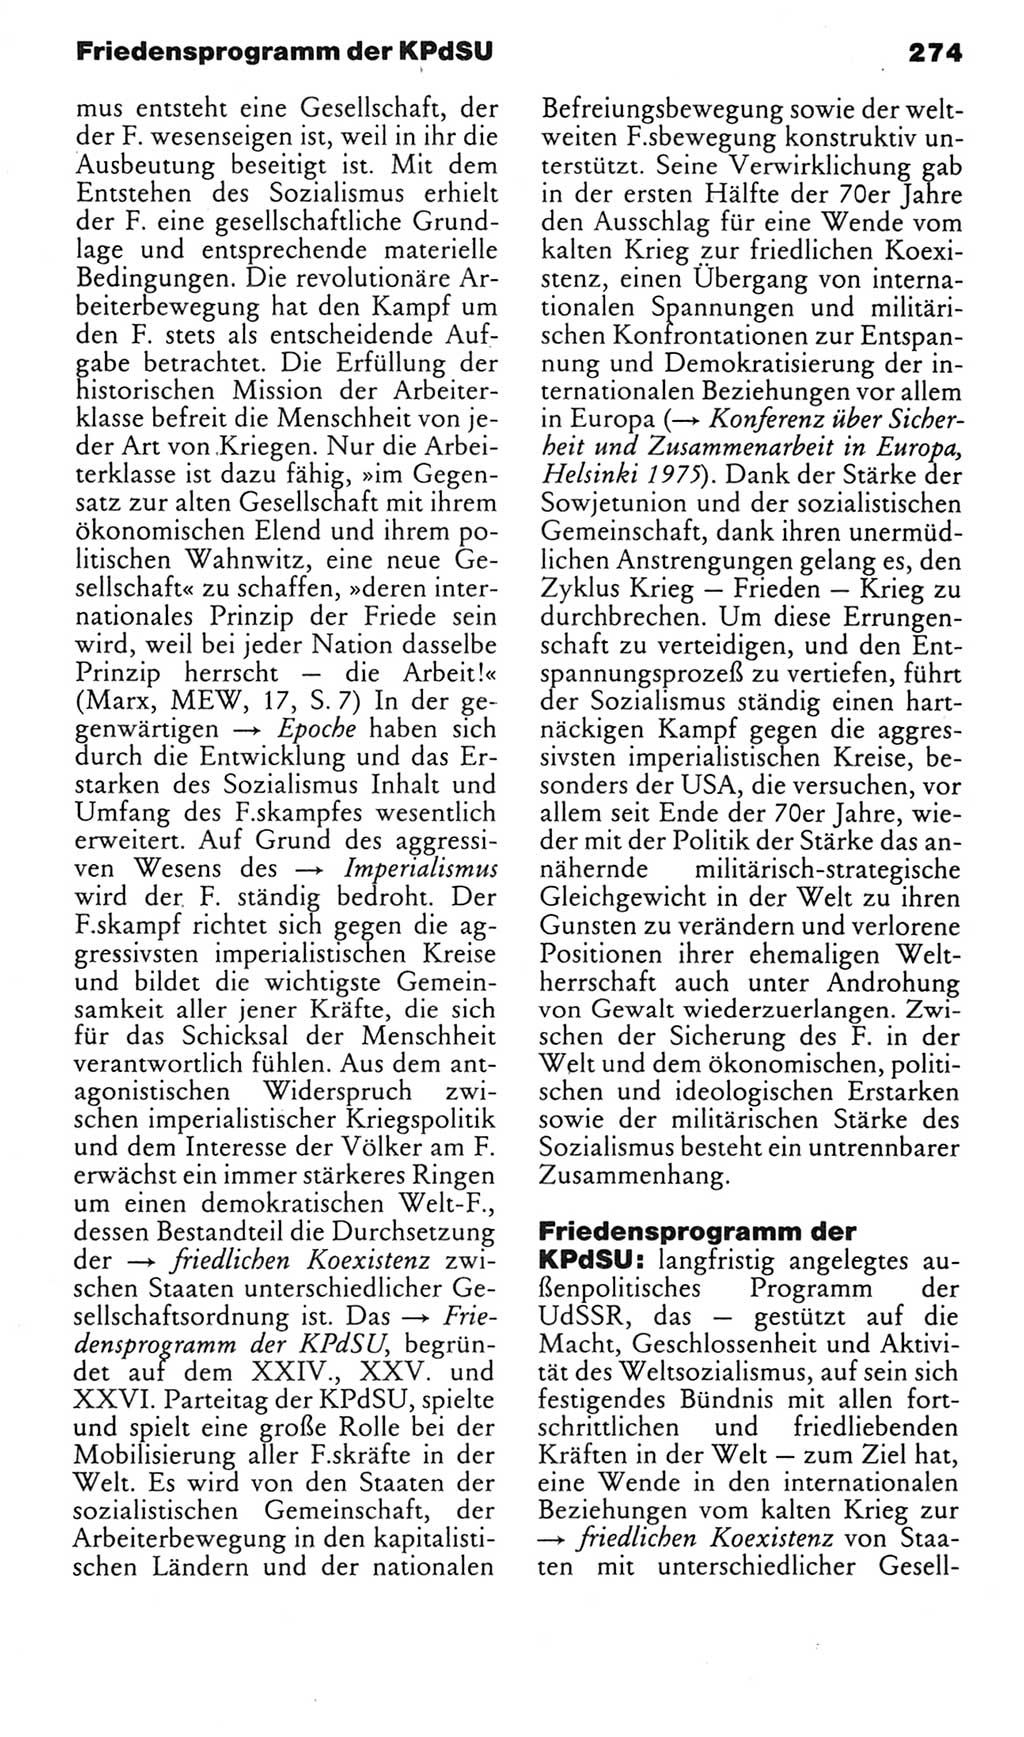 Kleines politisches Wörterbuch [Deutsche Demokratische Republik (DDR)] 1985, Seite 274 (Kl. pol. Wb. DDR 1985, S. 274)